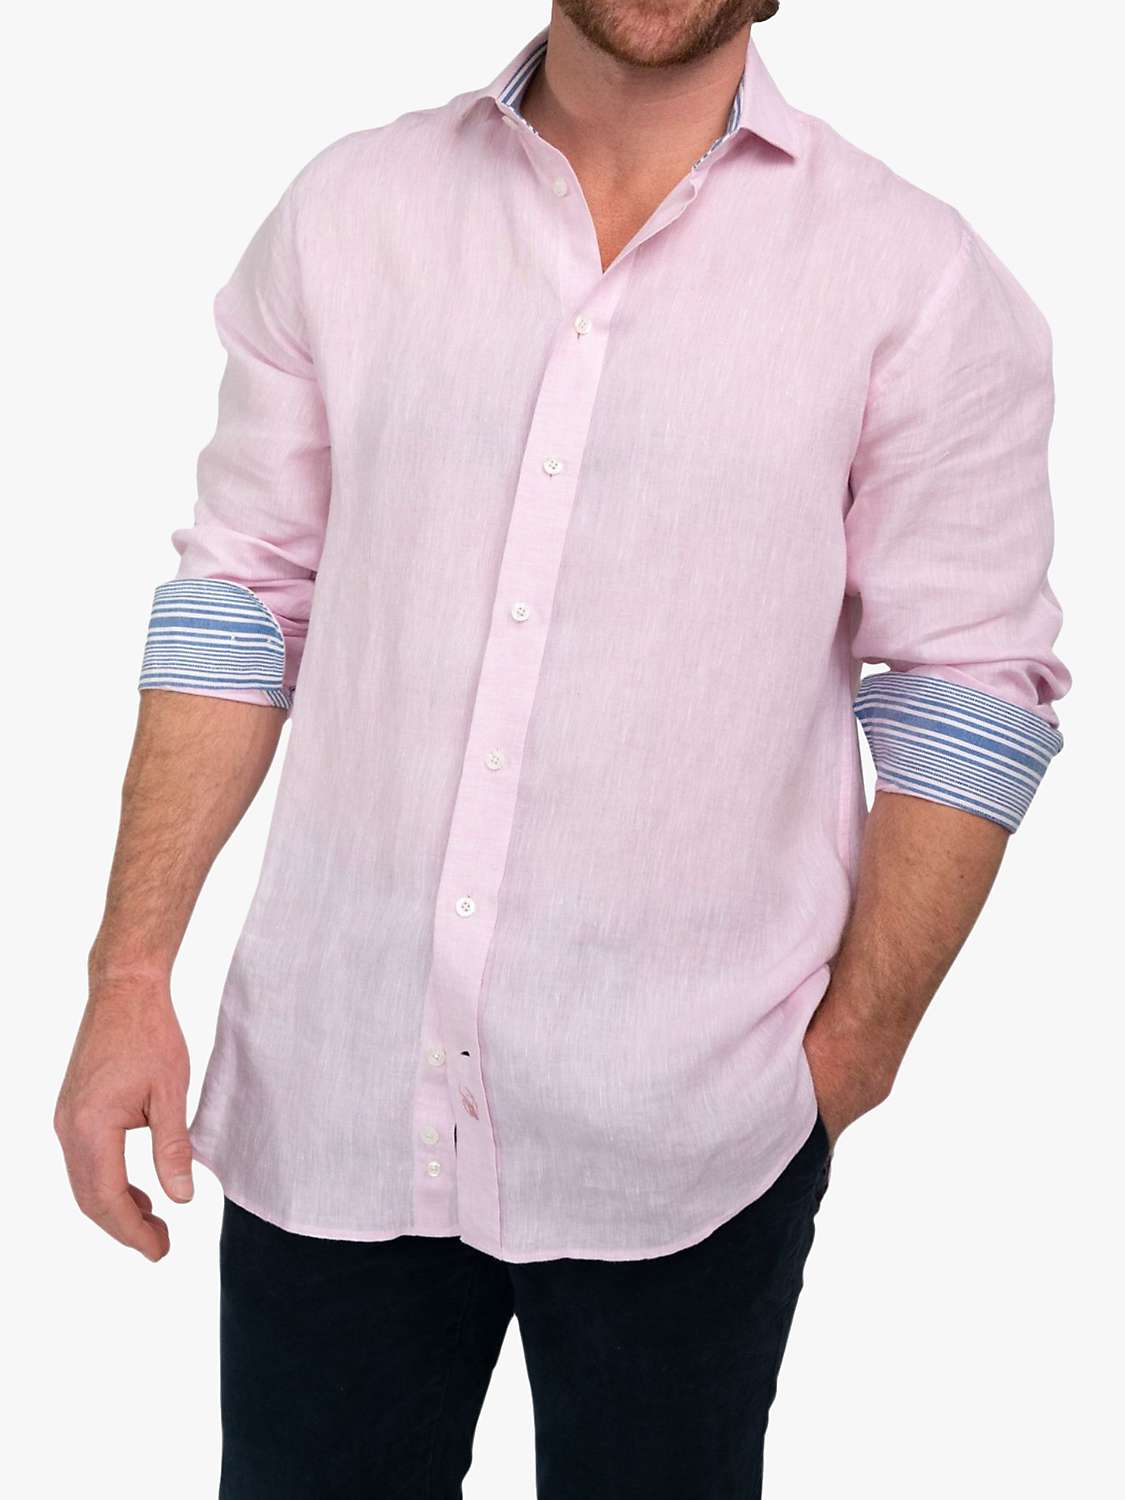 Buy KOY Linen Shirt Online at johnlewis.com